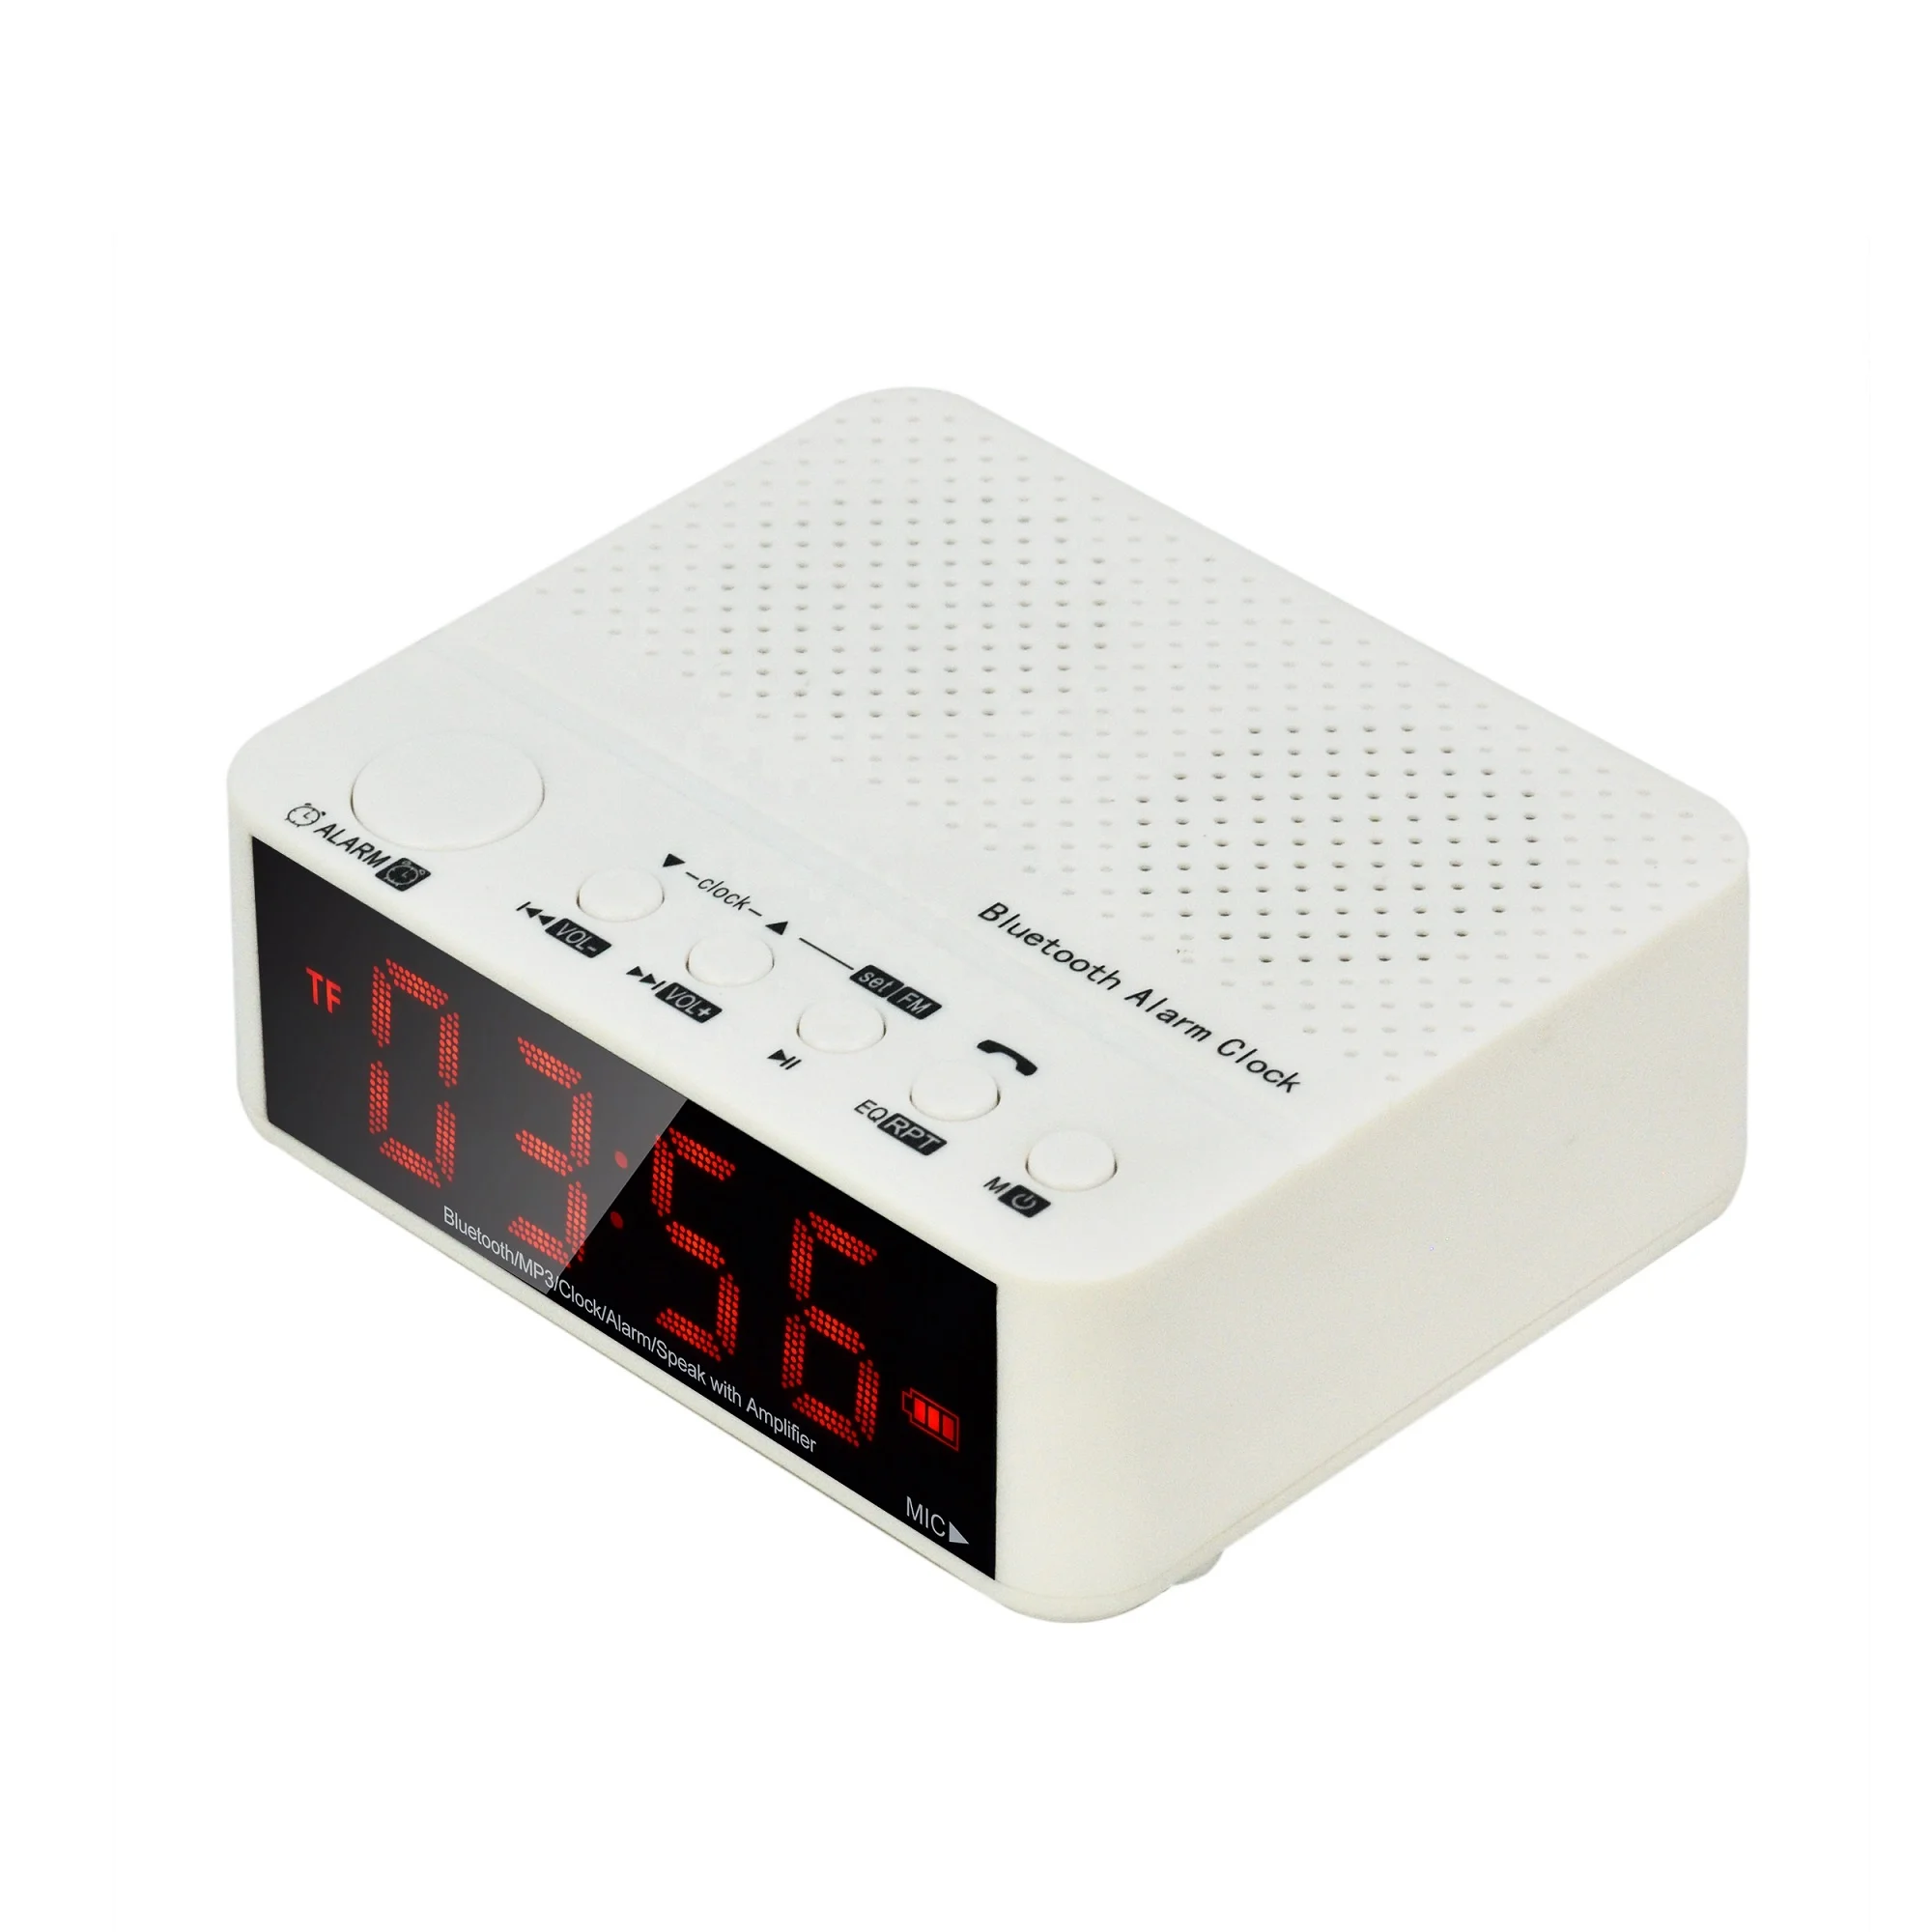 Nu Kopen Nachtzicht Alarm Radio Klok Voor Slaapkamer Originele Met Mp3 Palyer - Buy Wekker Originele,Wekker Kussen,Wekker Vibrerende on Alibaba.com